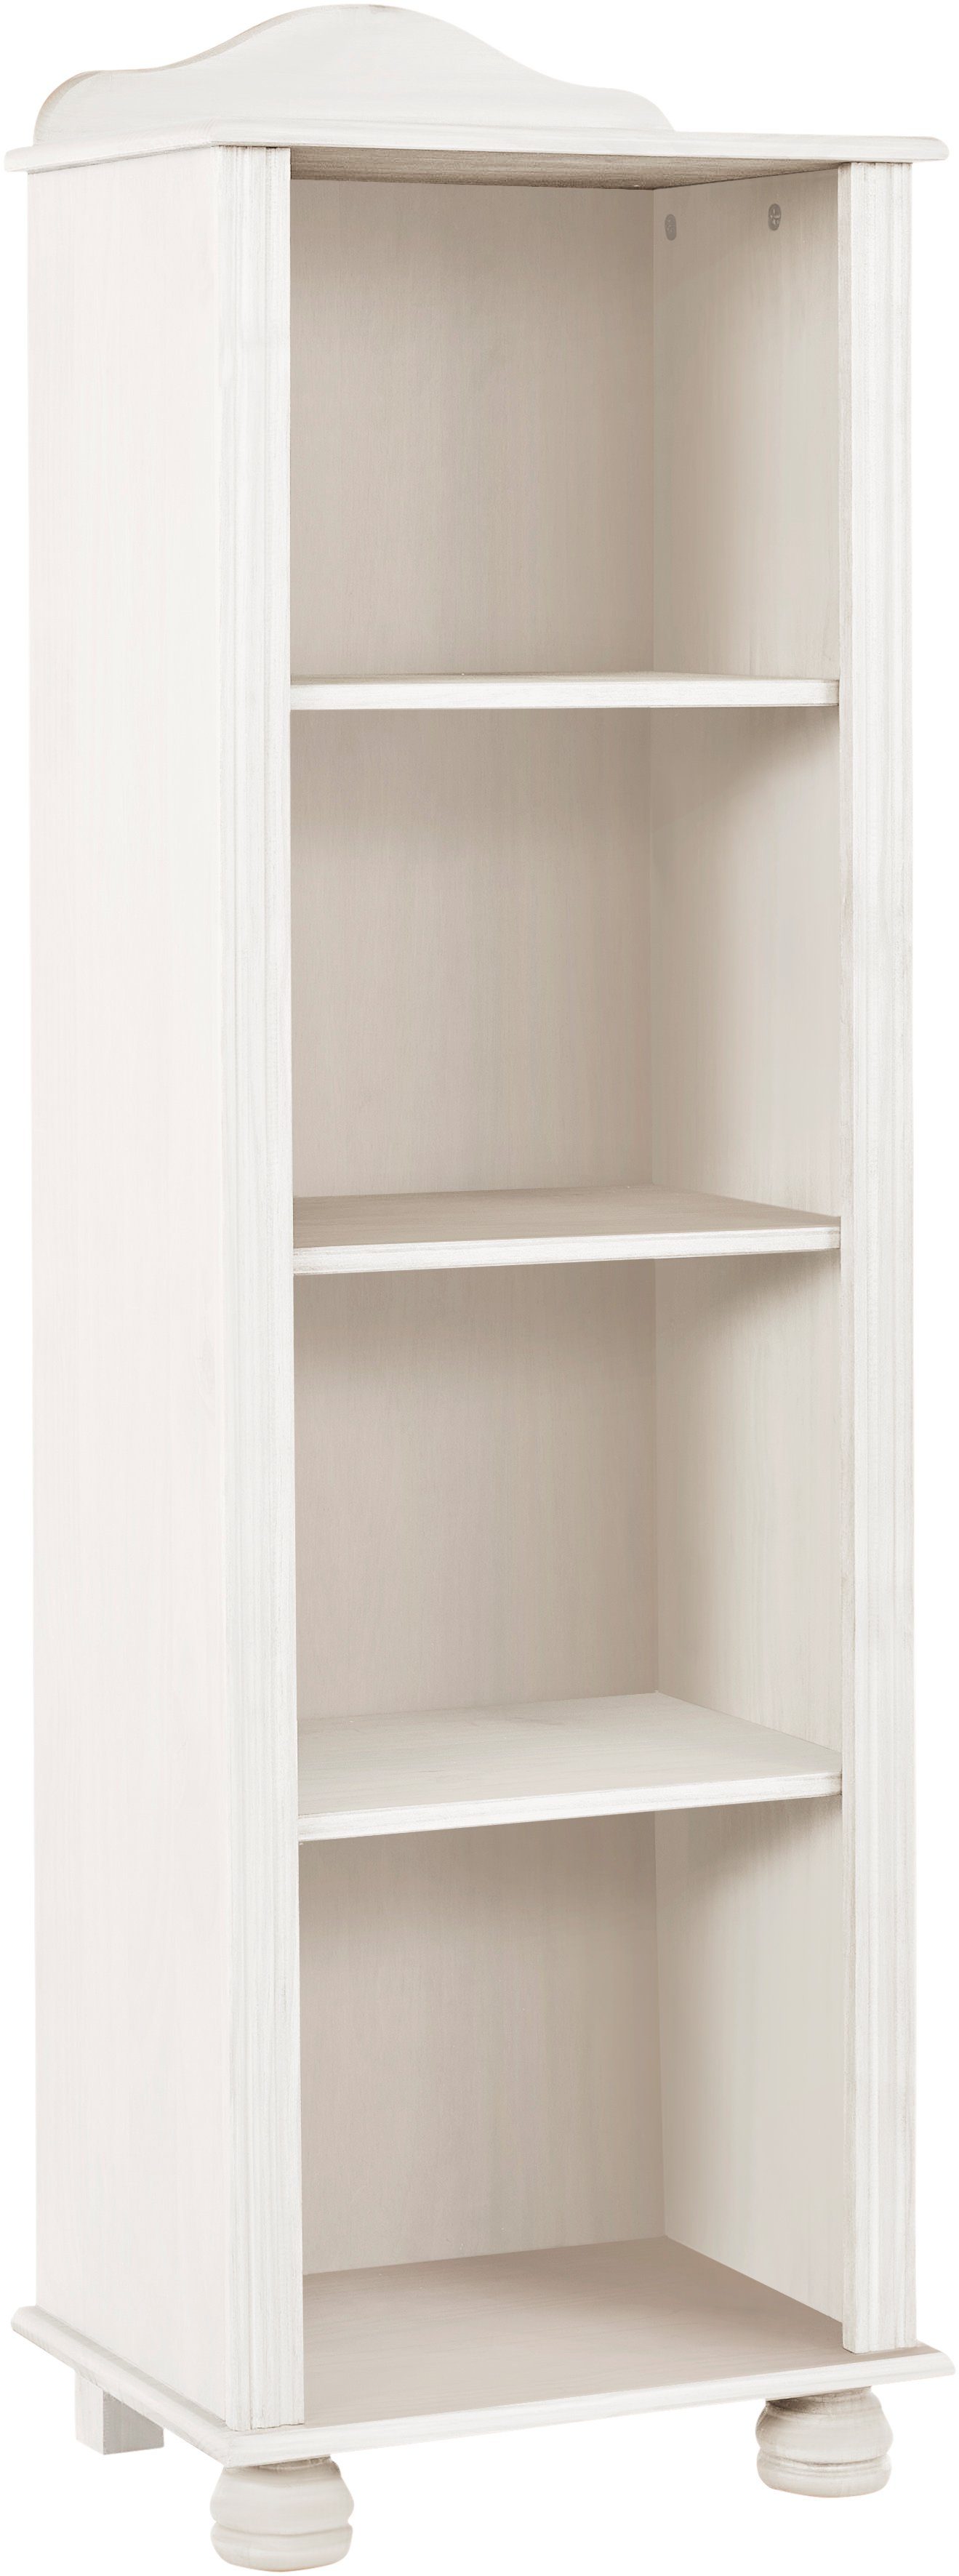 Home affaire Bücherregal Mette, Mit 3 Einlegeböden, Höhe 140 cm weiß